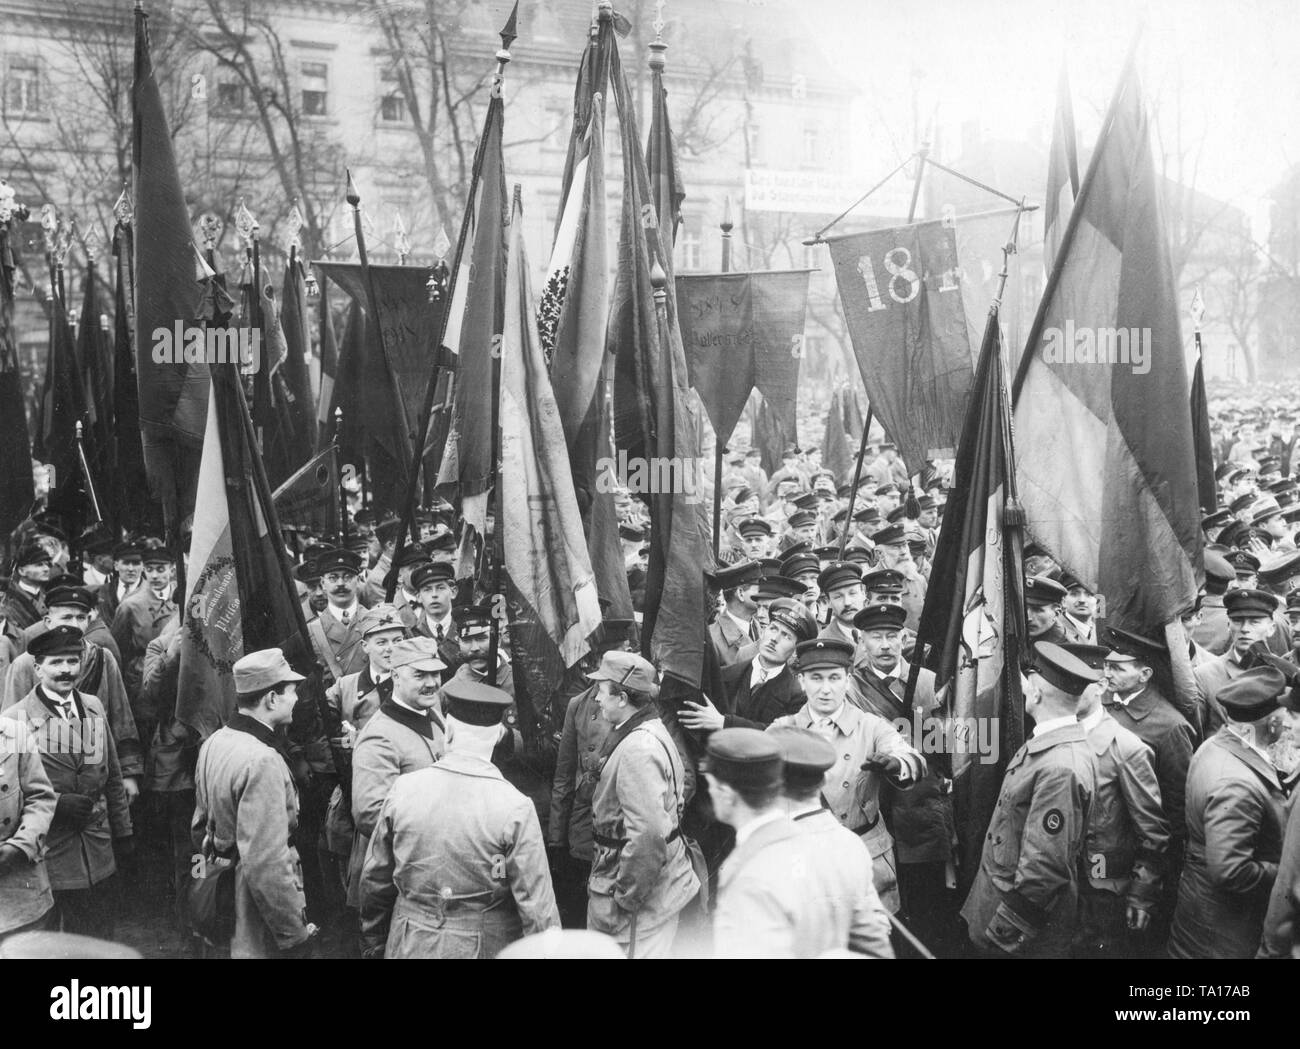 Pour célébrer le premier anniversaire de la fondation de la Reichsbanner Schwarz-Rot-Gold, plus d'une centaine de milliers de membres se sont réunis à Magdeburg. Voici une foule lors d'un rassemblement sur la Domplatz de Magdebourg, sur un drapeau se trouve le numéro de l'année 1848, une allusion à la révolution de mars. Banque D'Images